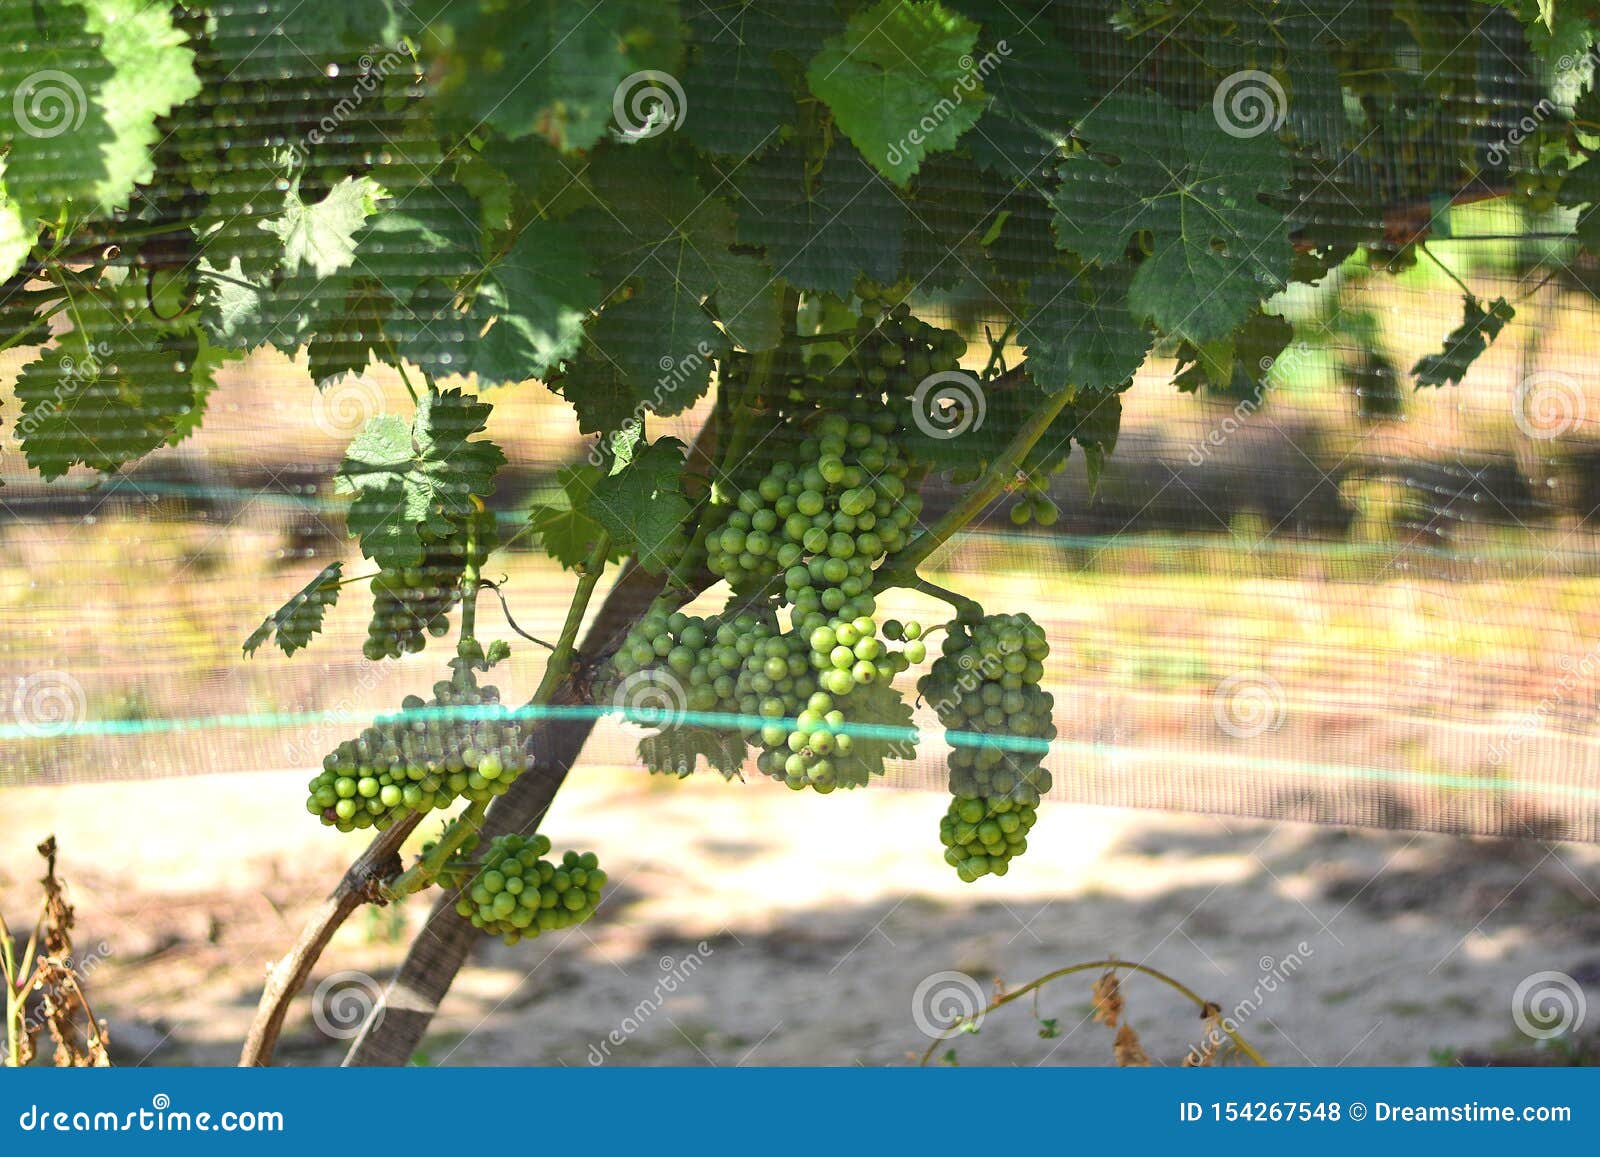 grapevine under anti-heil net